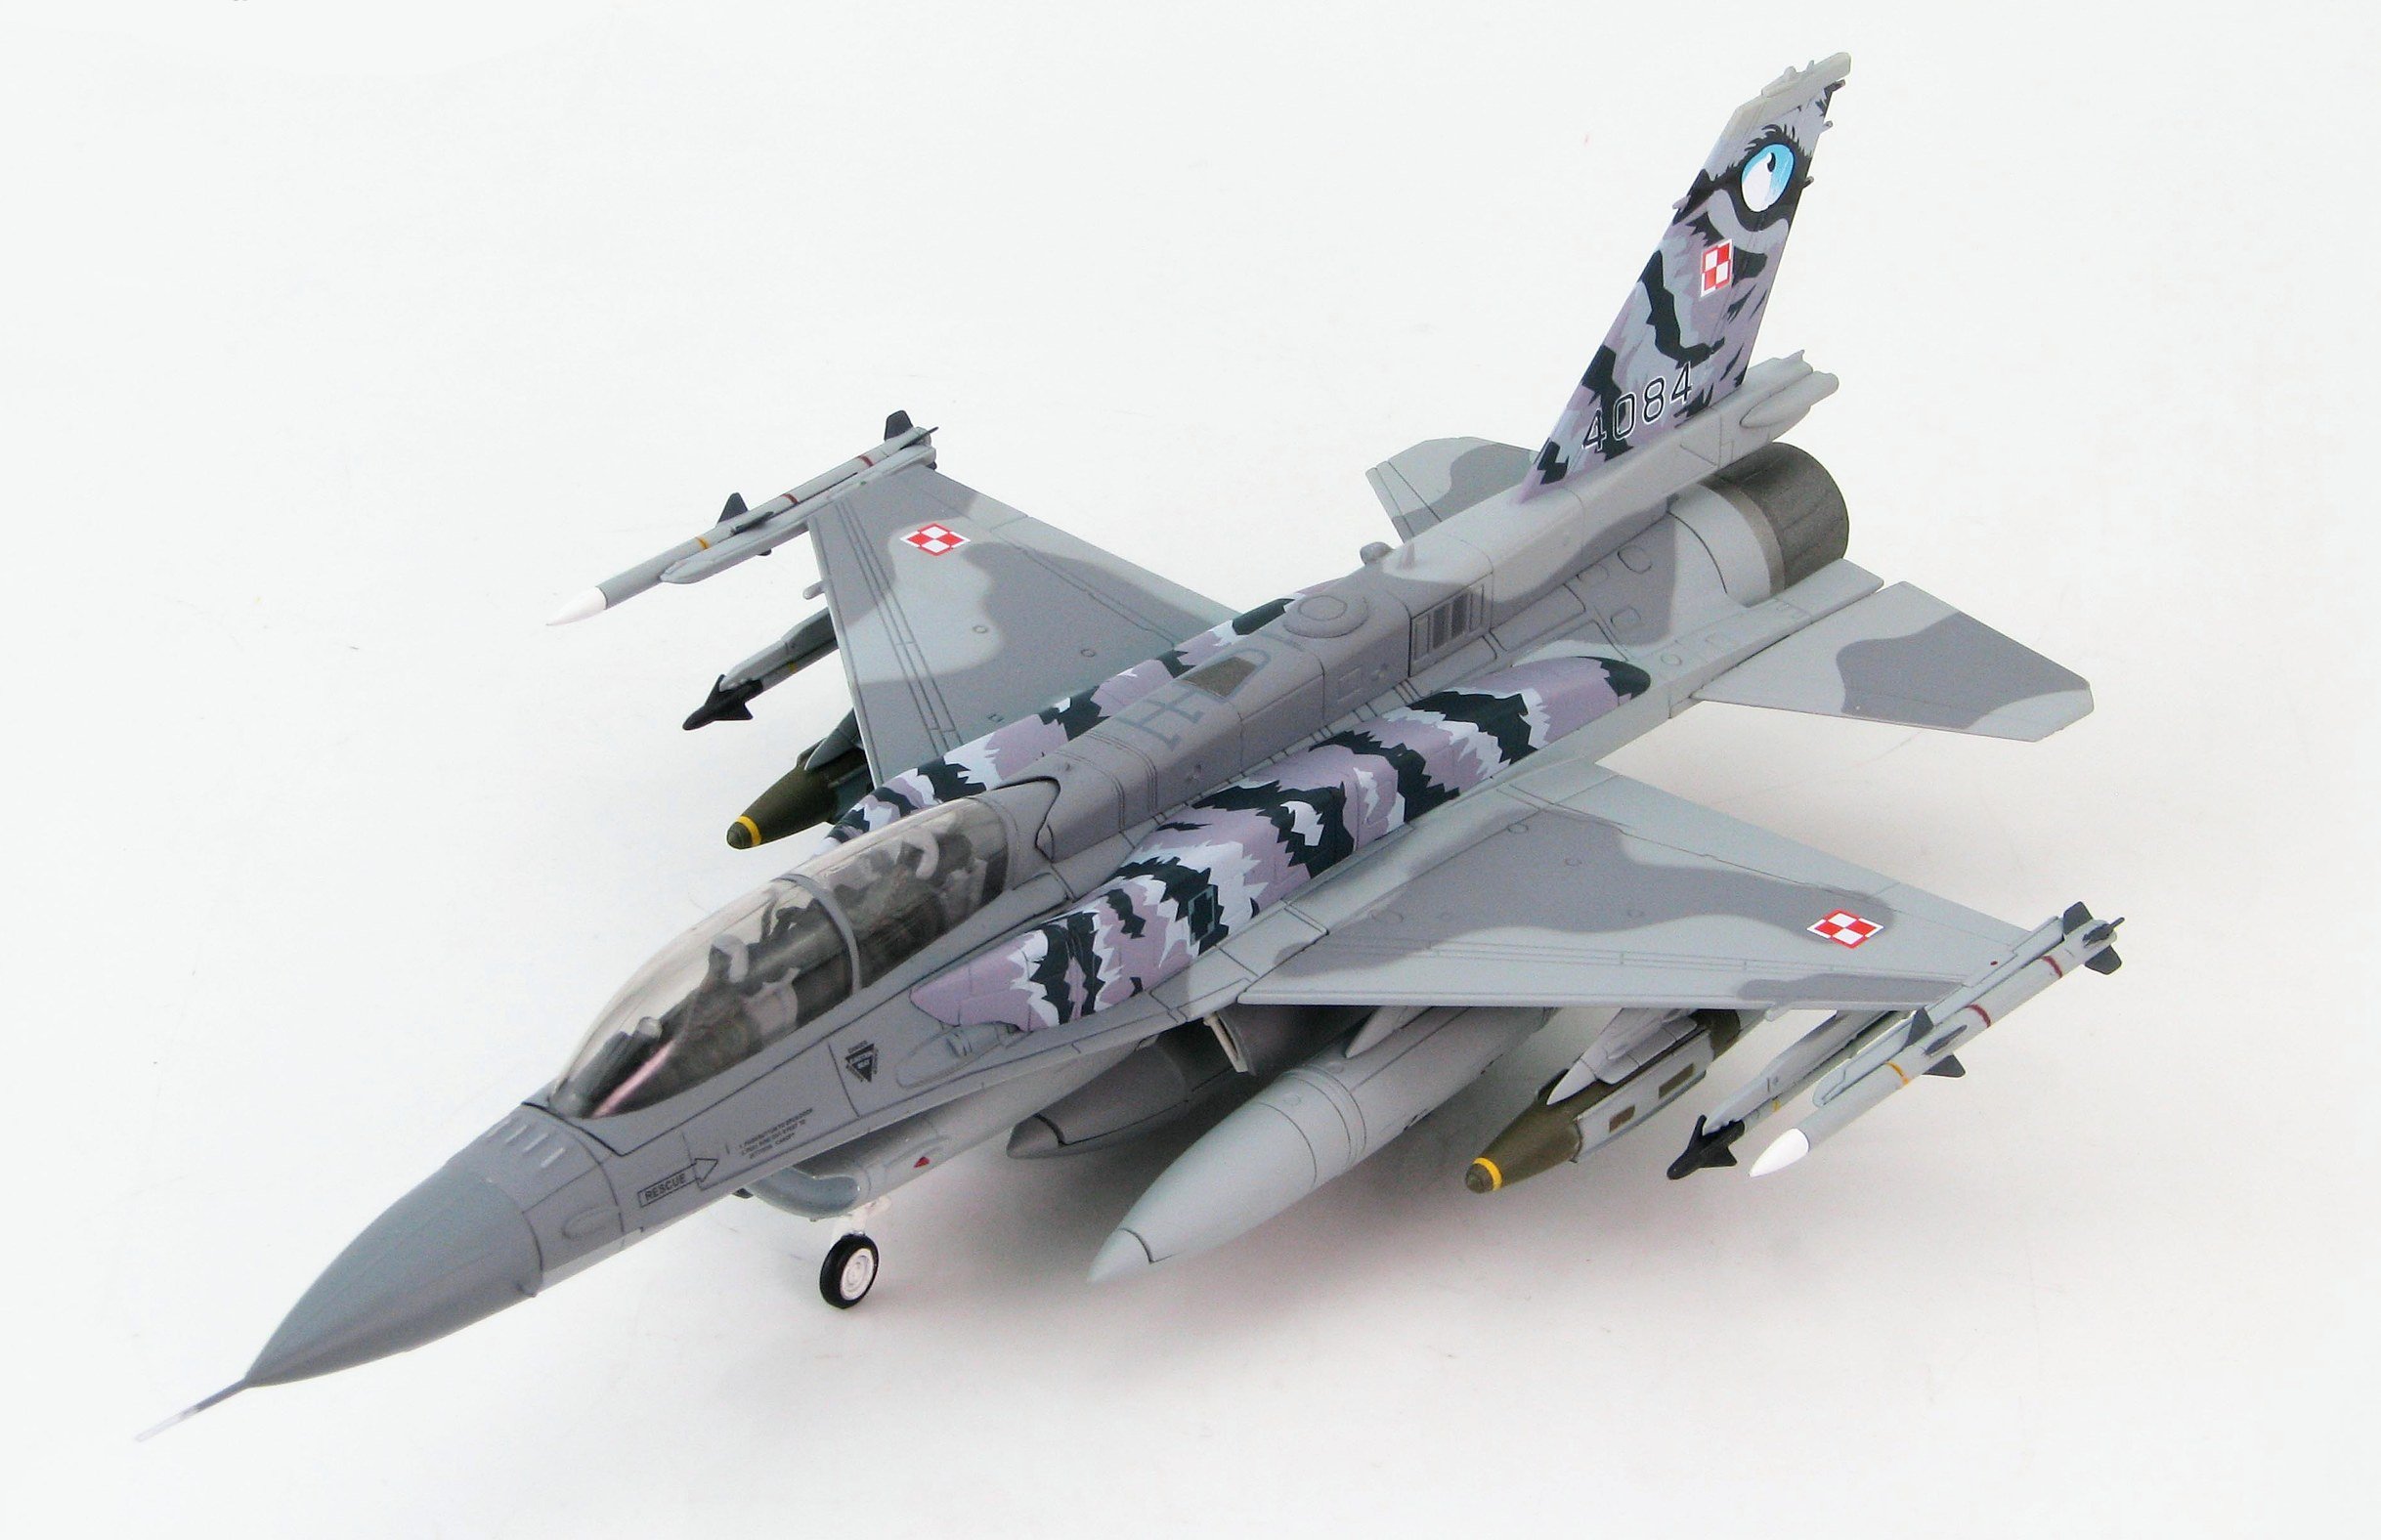 F-16D Polish Air Force, 6.eskadra lotnicza (Best Flying Unit), NATO Tiger Meet